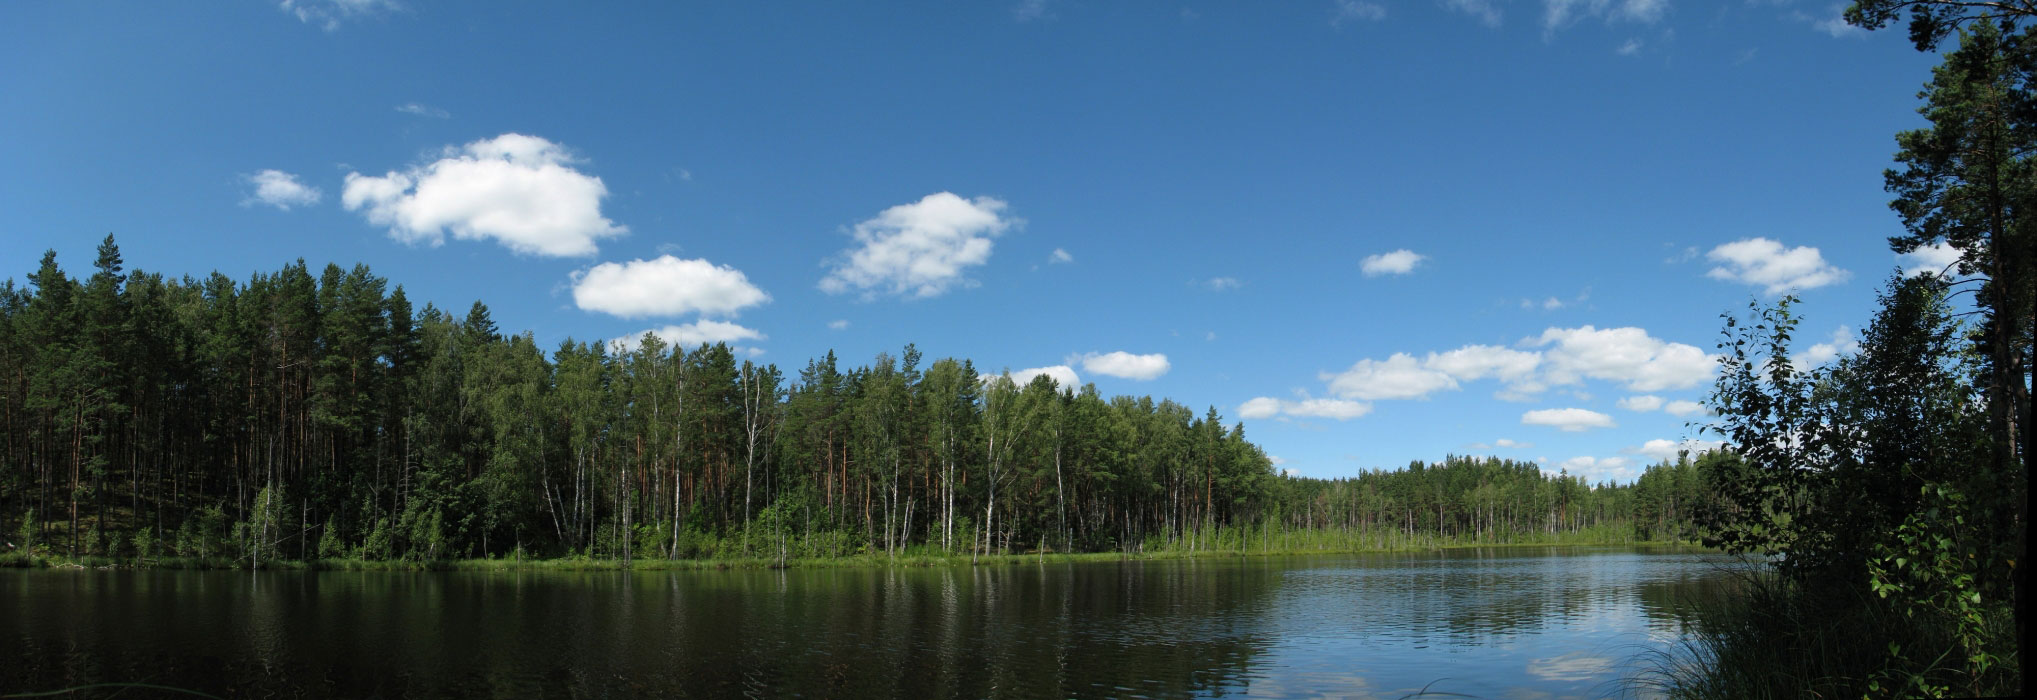 Озеро Кривохвостик фото